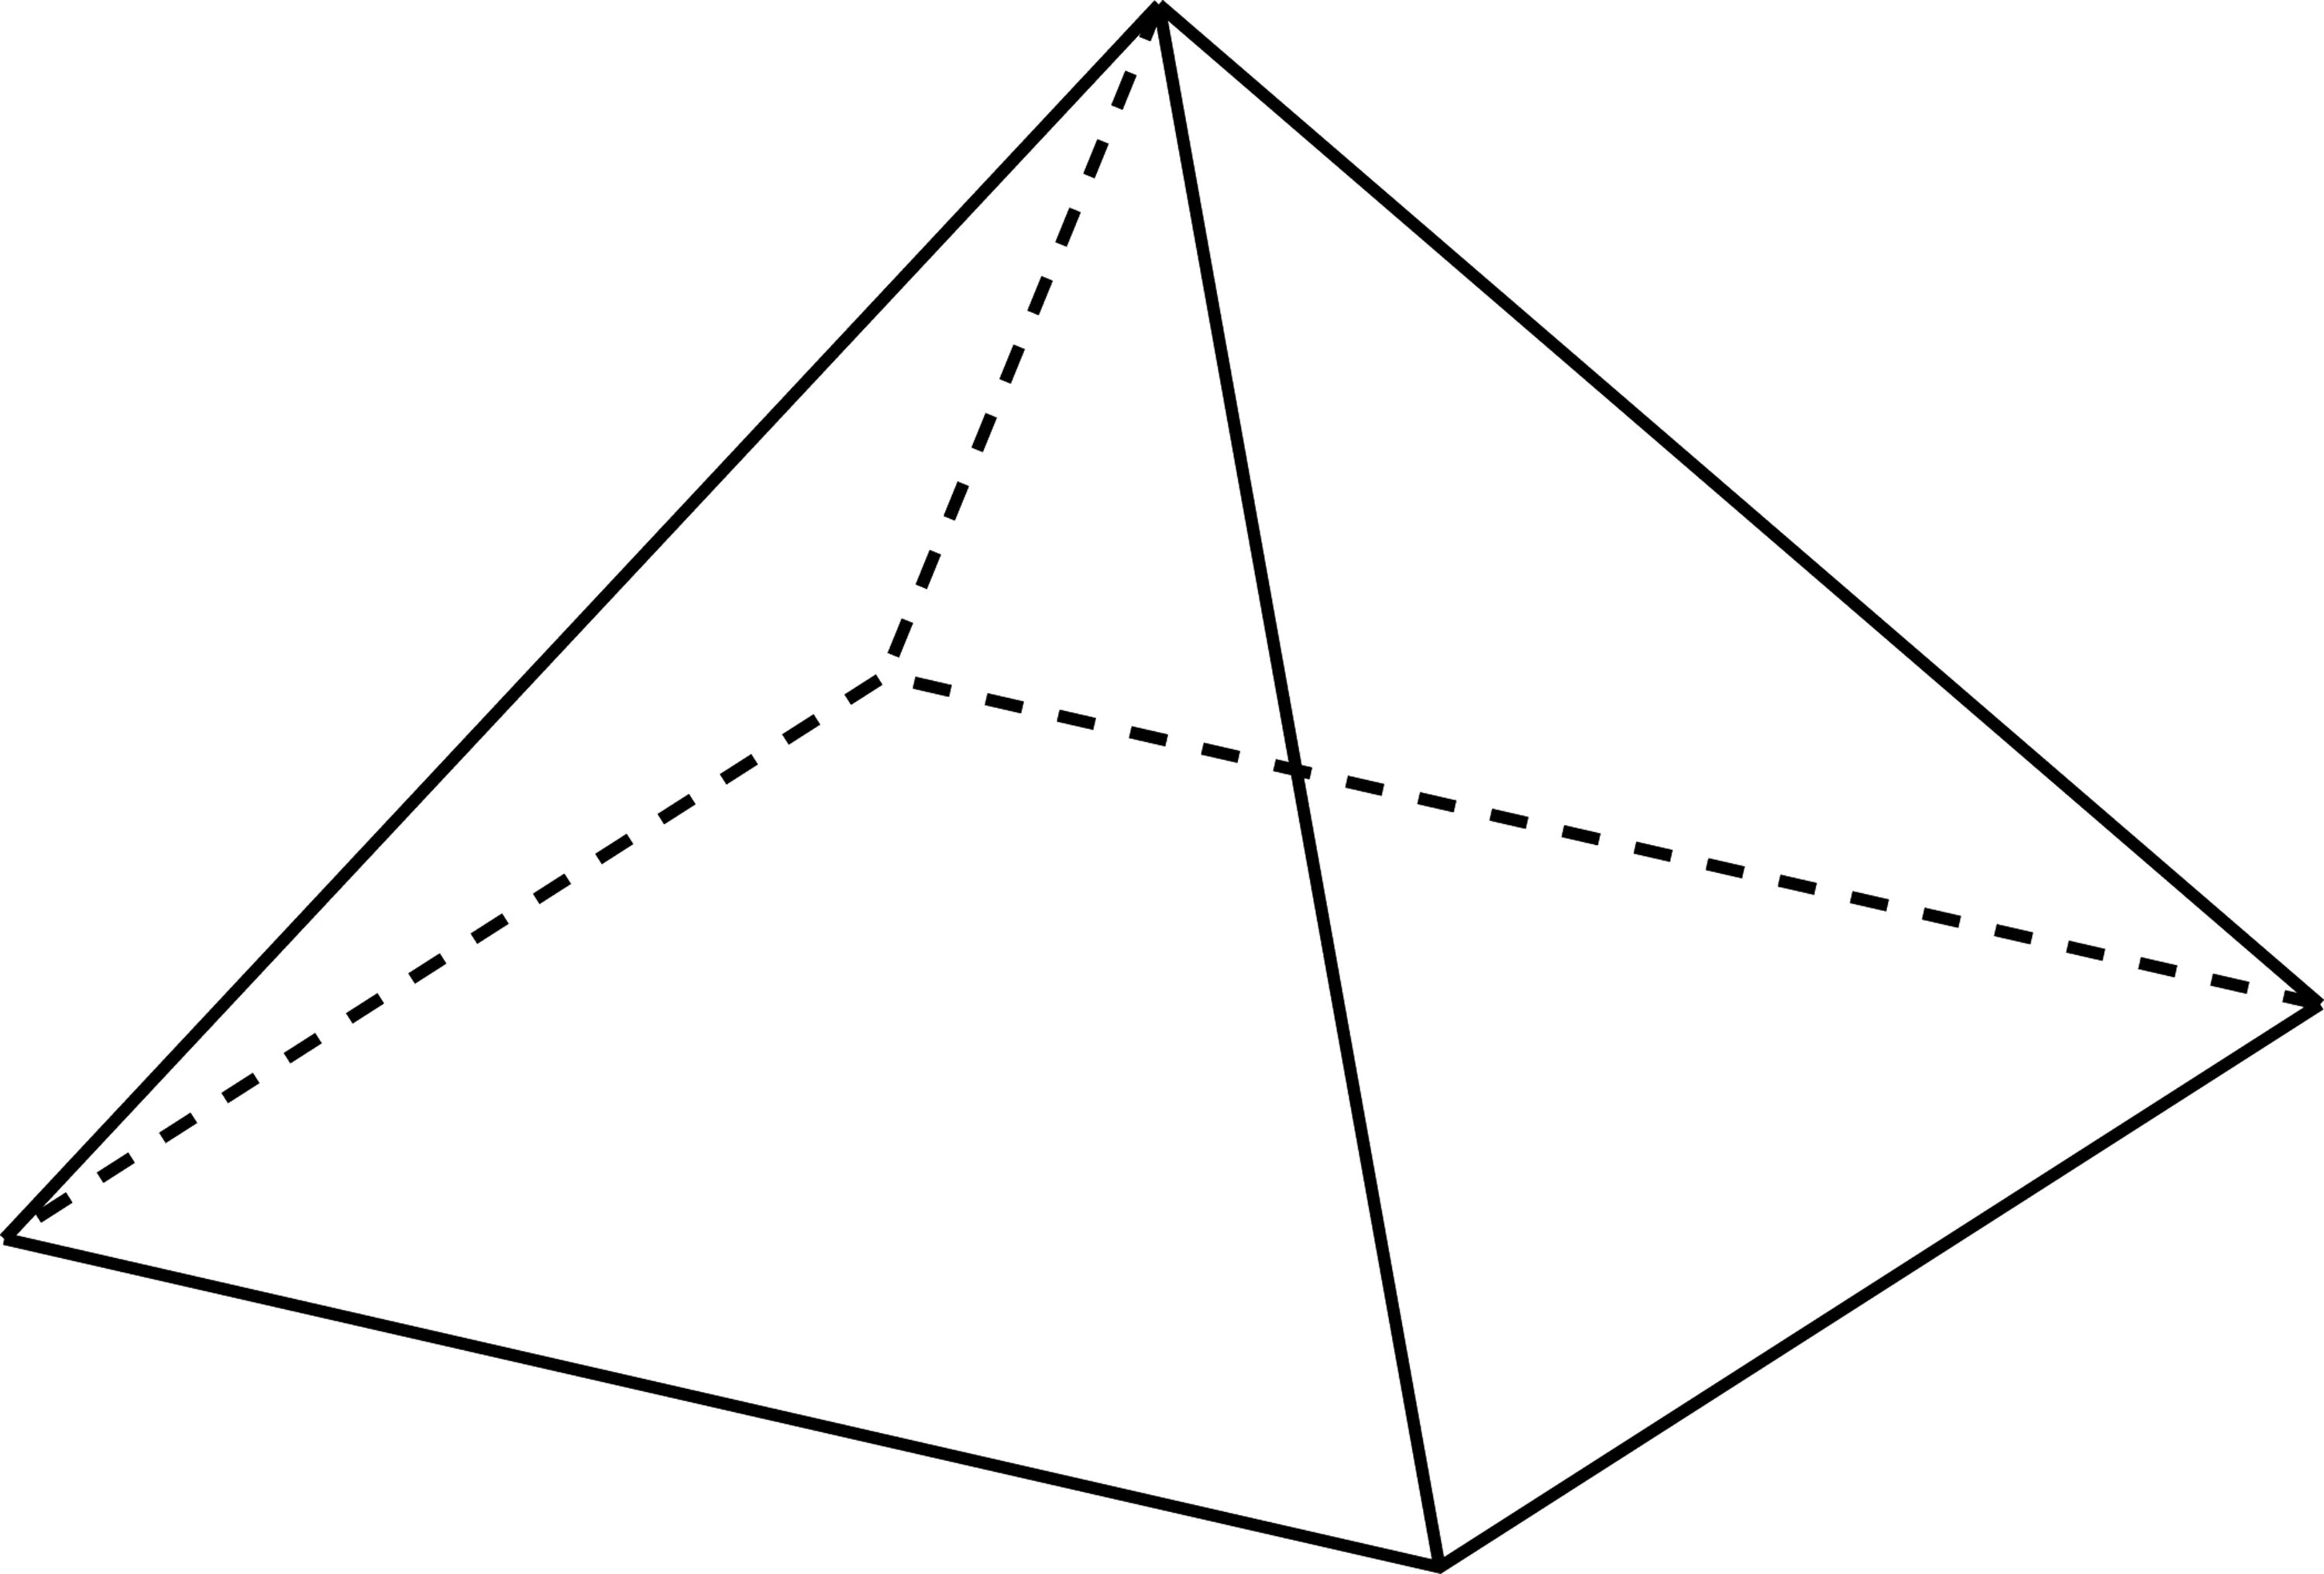 Правильная четырехугольная пирамида. Правильные тчетырёхугольная пирамида. Правильная четырхугольнаяпирамида. Правильная чктрвх угольная пирамида.